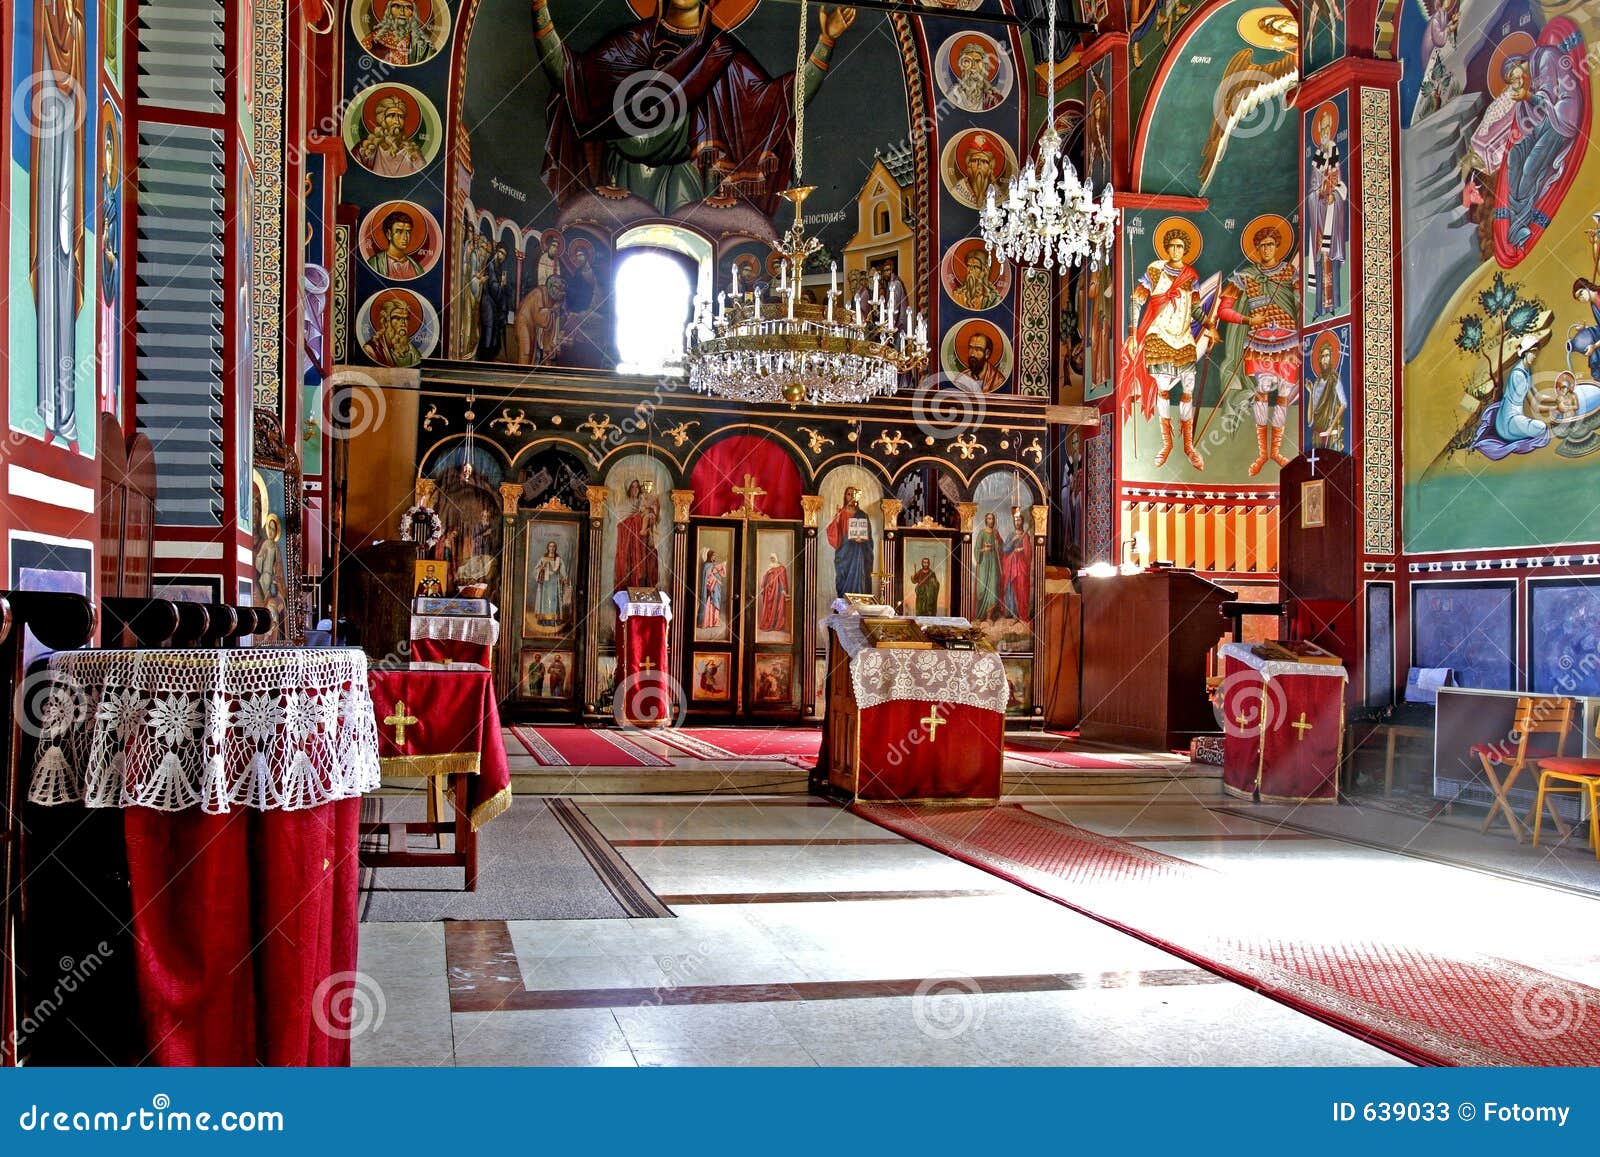 Monastery interior stock image. Image of gregorian, belief - 639033